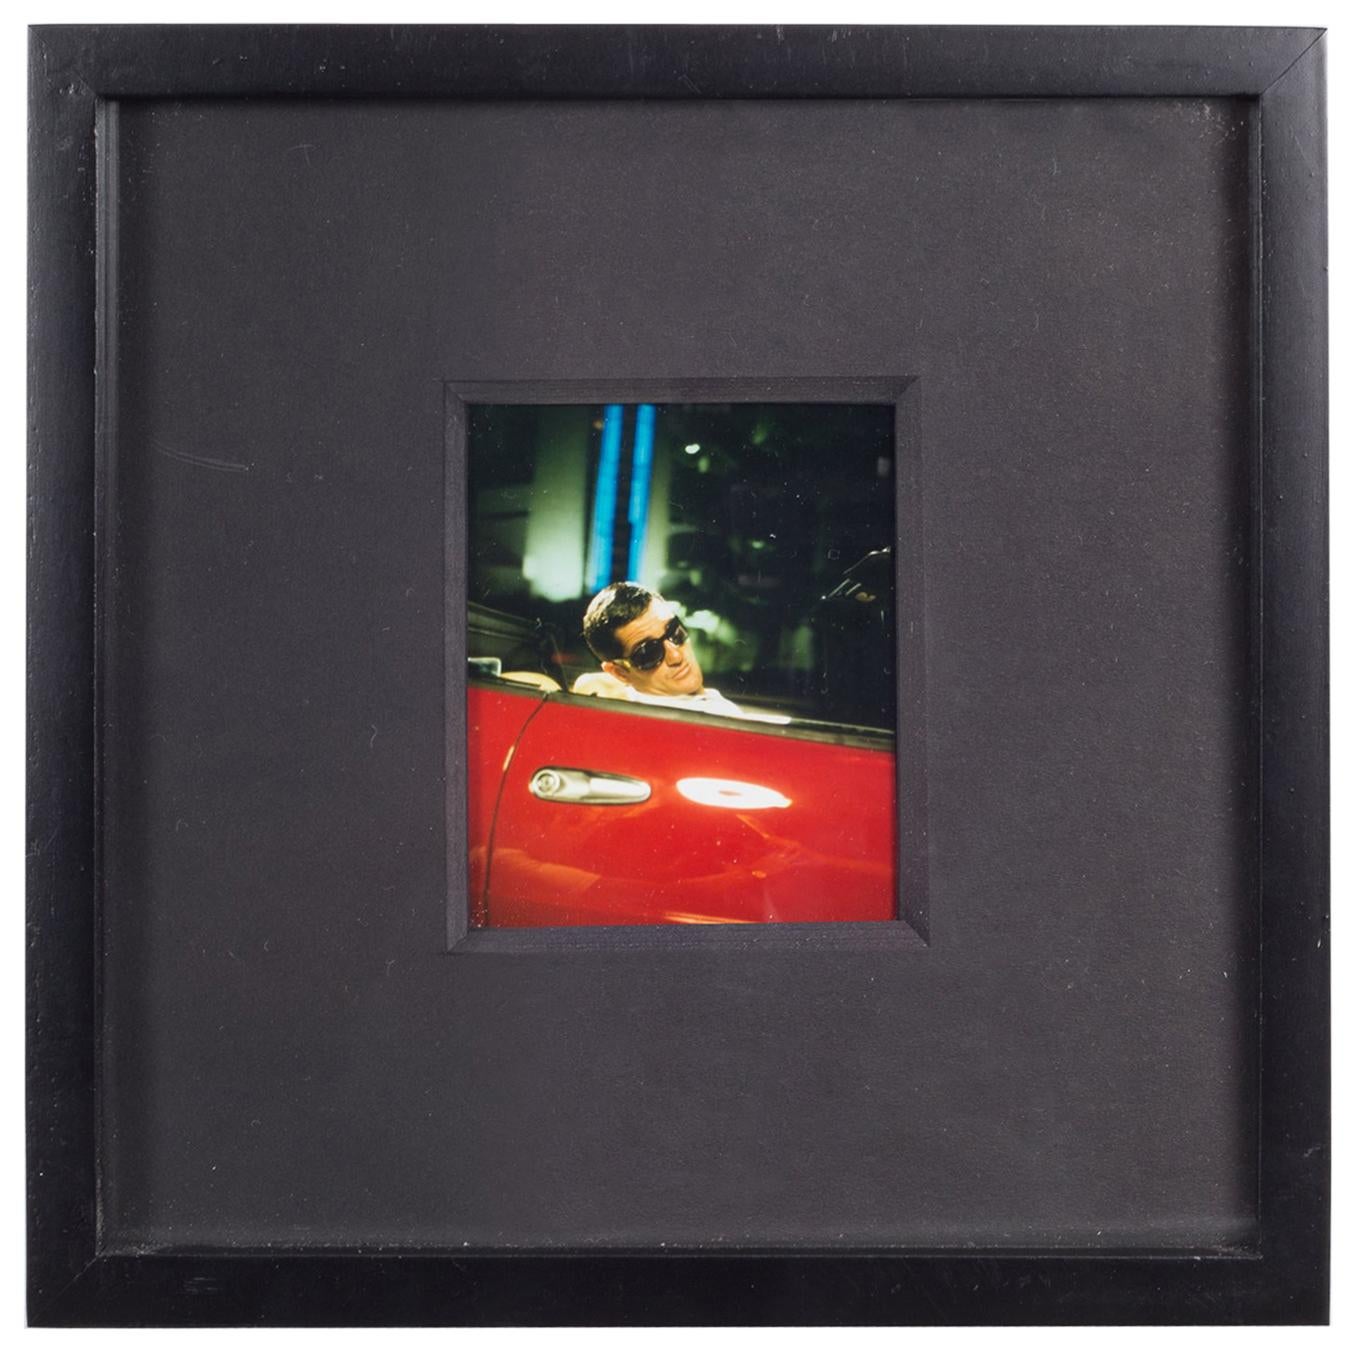 Polaroid Test Image #36 by Denise Tarantino for Dah Len Studios